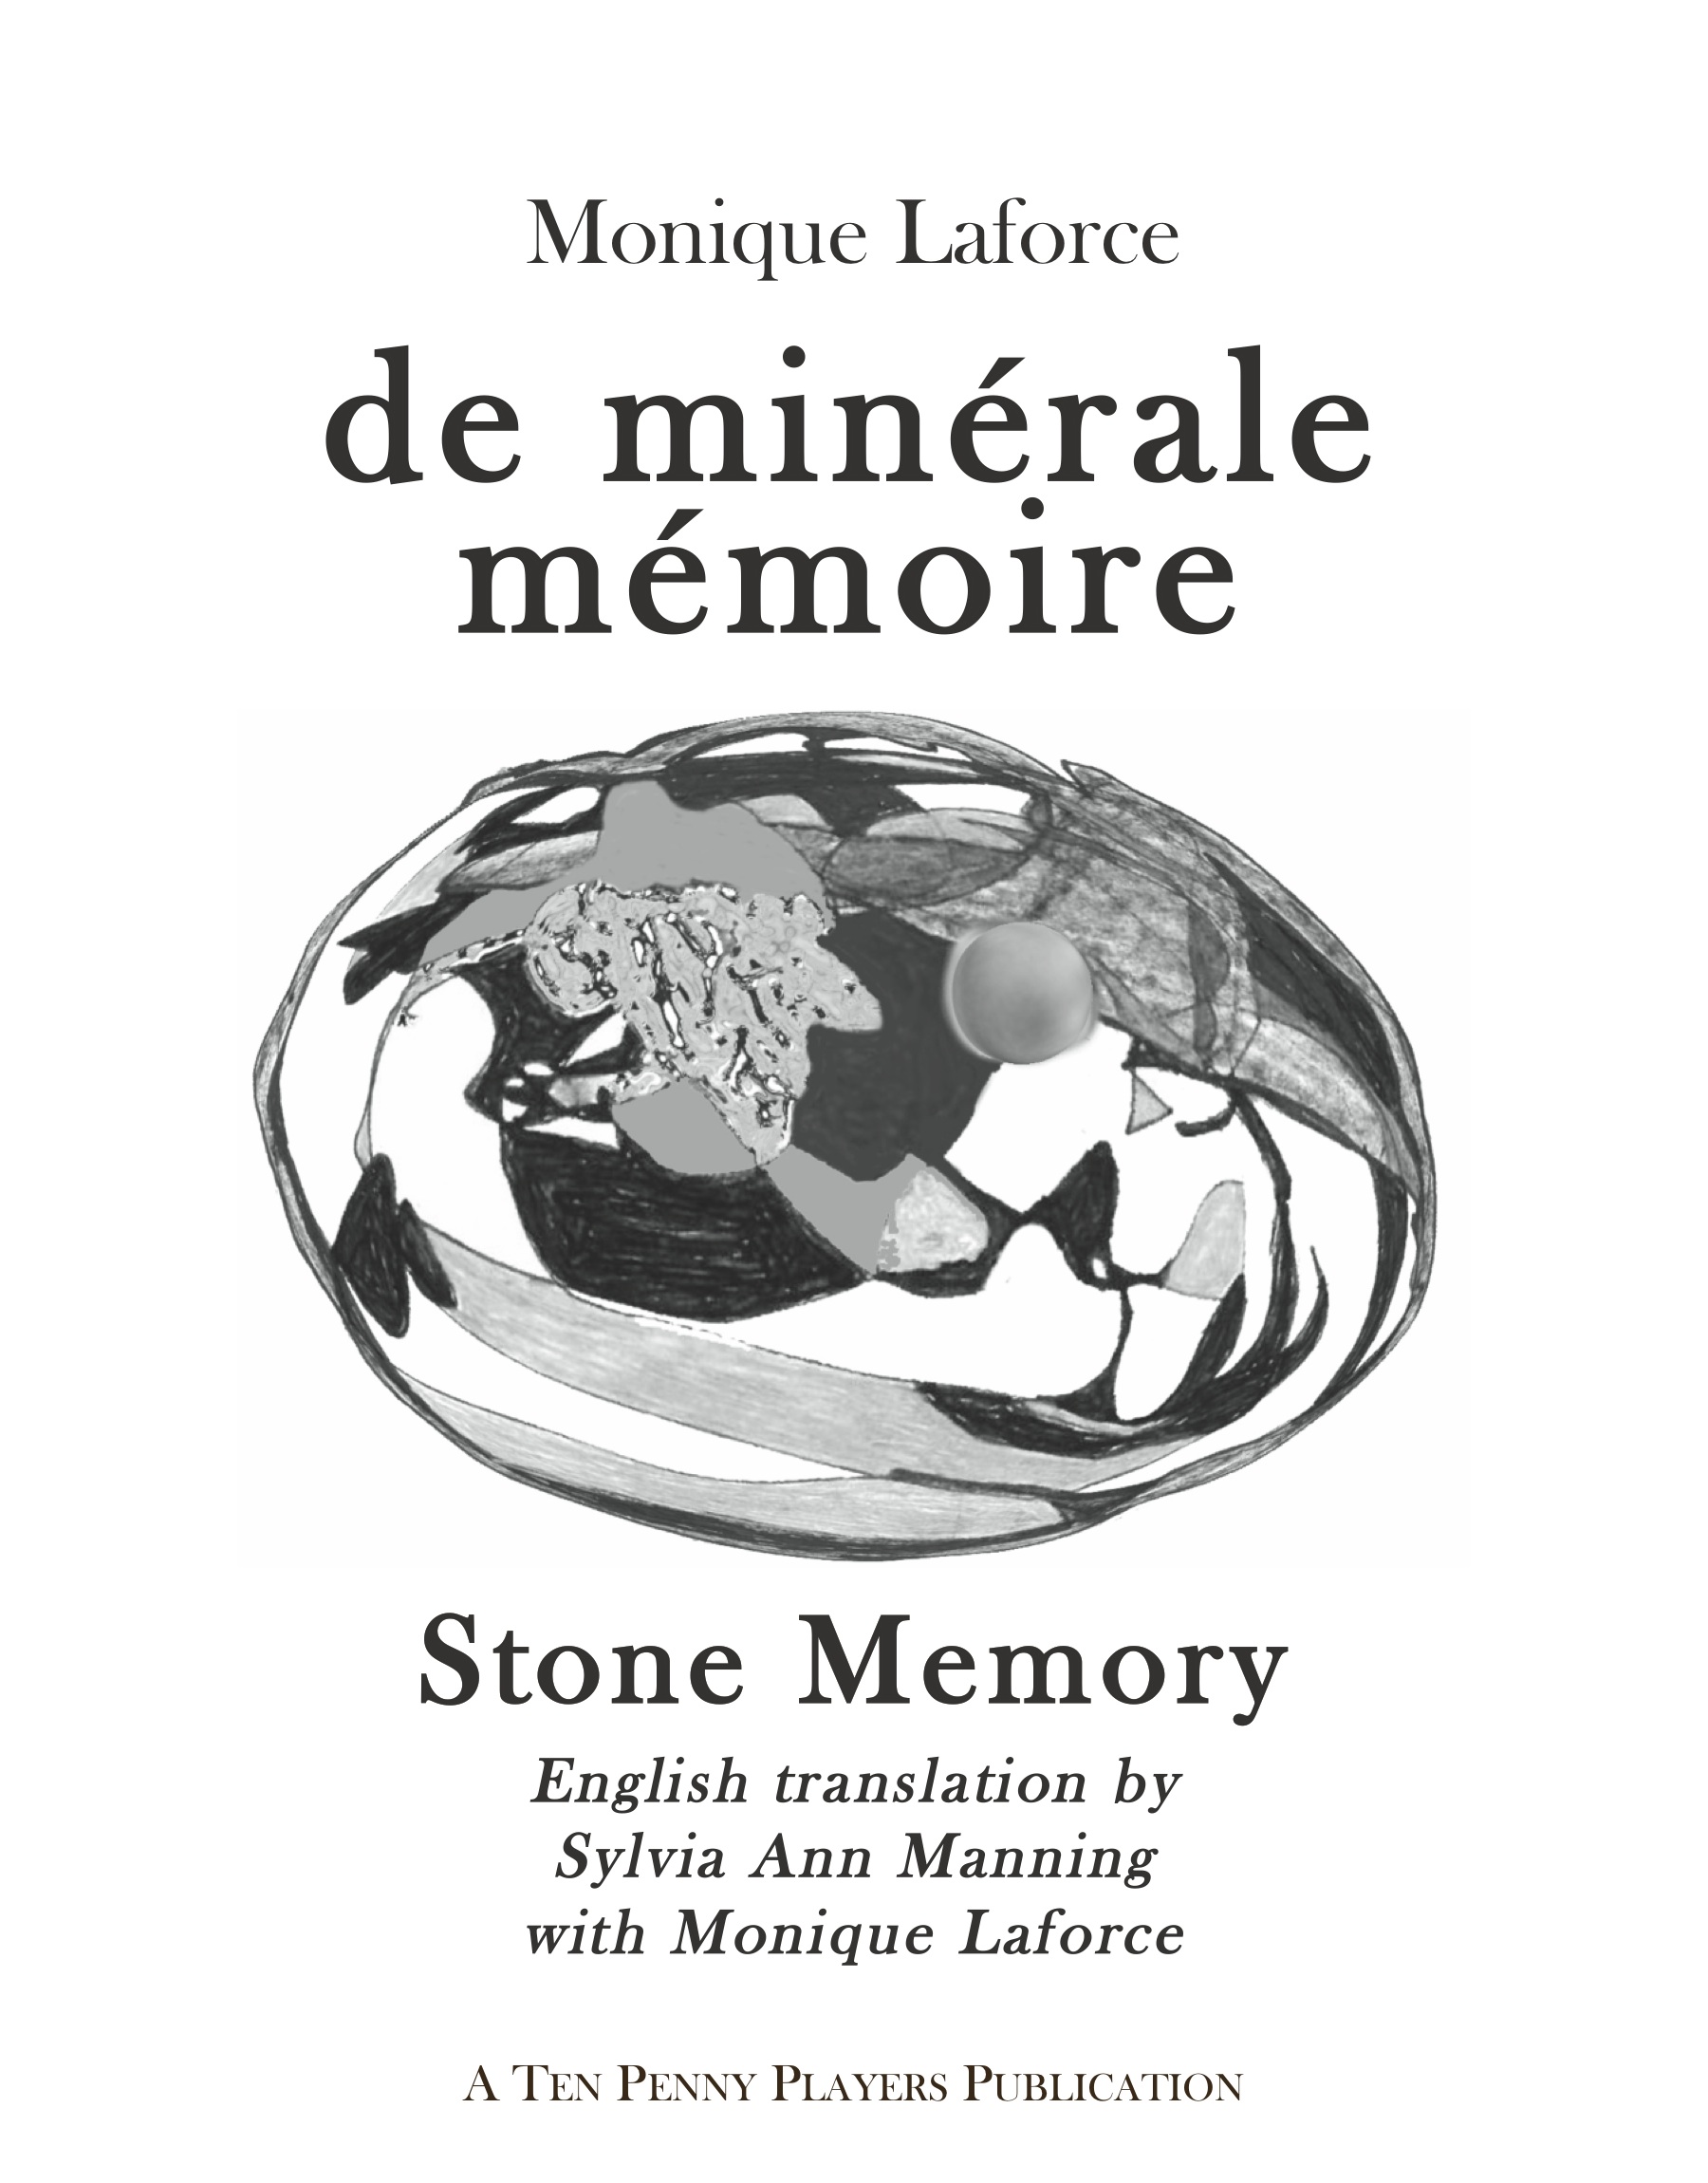 Minerale Memoire by Monique Laforce